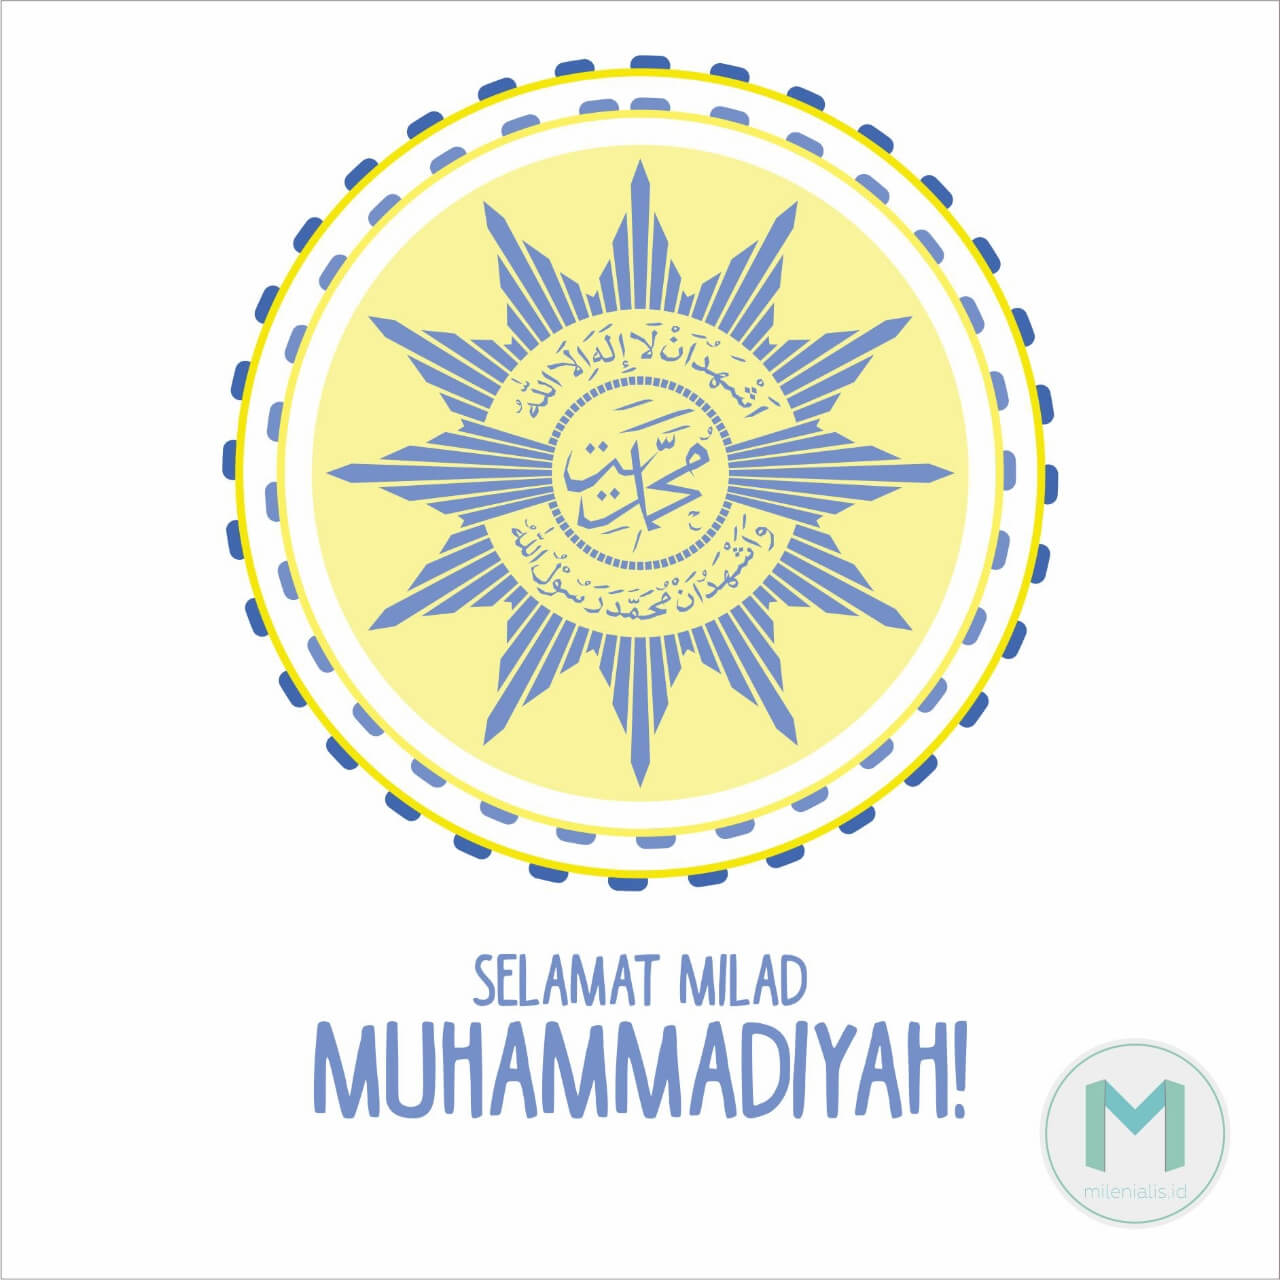 Apakah Ada Manipulasi Sejarah Milad Muhammadiyah?